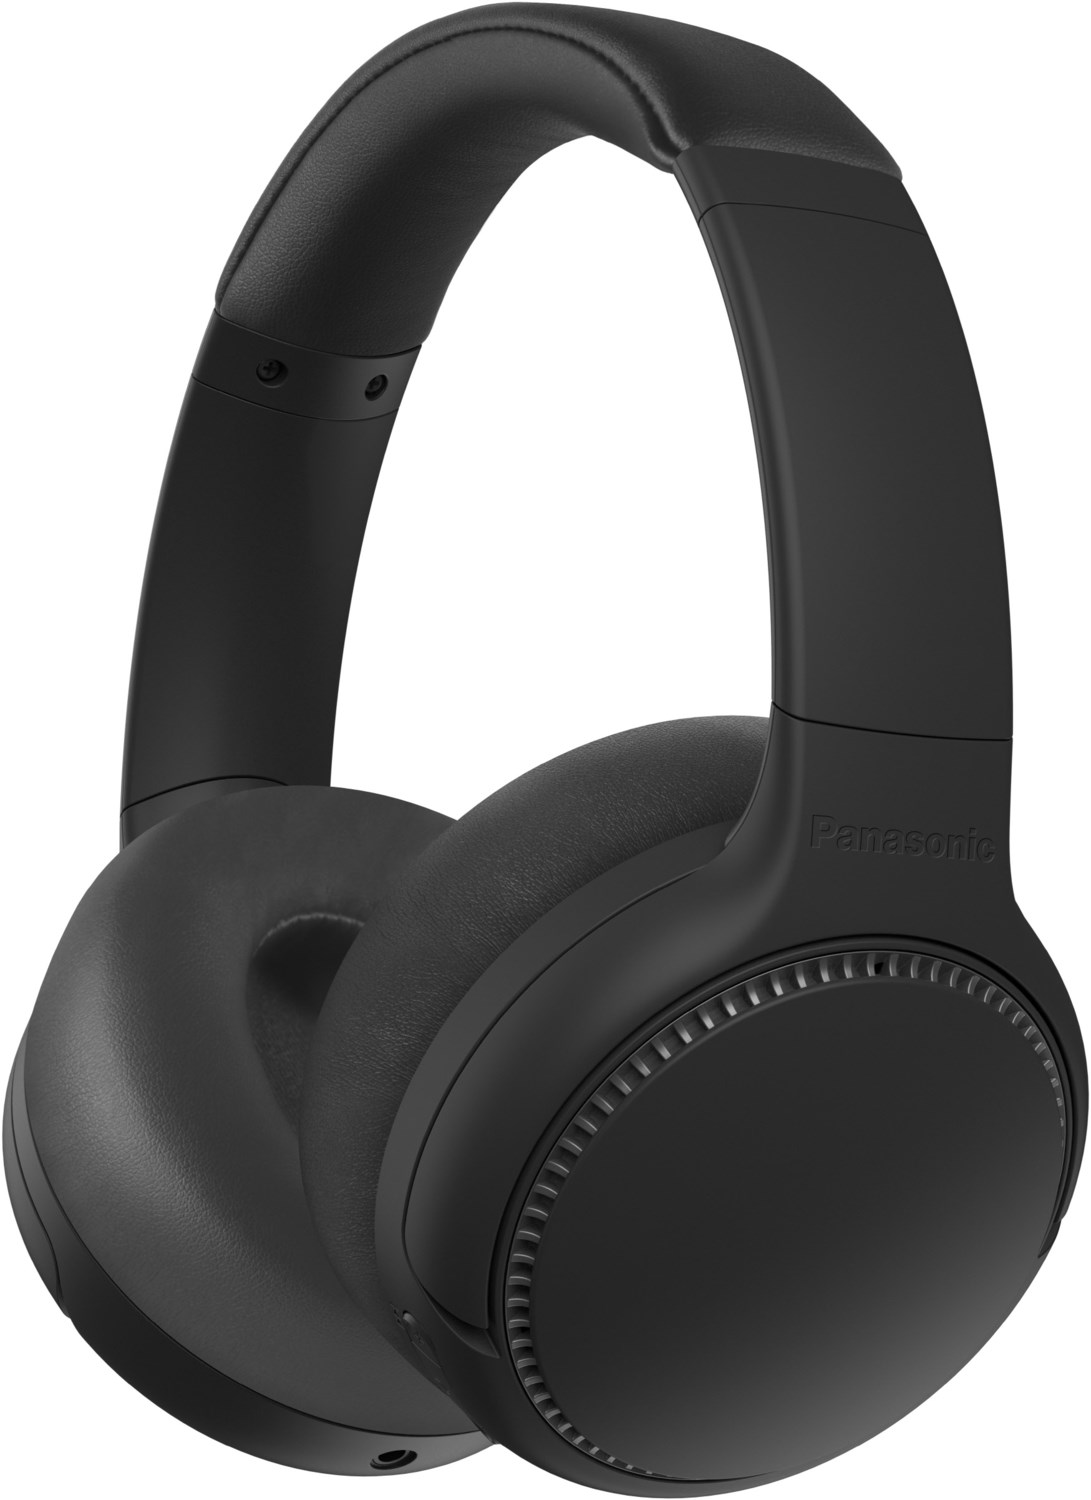 RB-M500BE Bluetooth-Kopfhörer schwarz von Panasonic